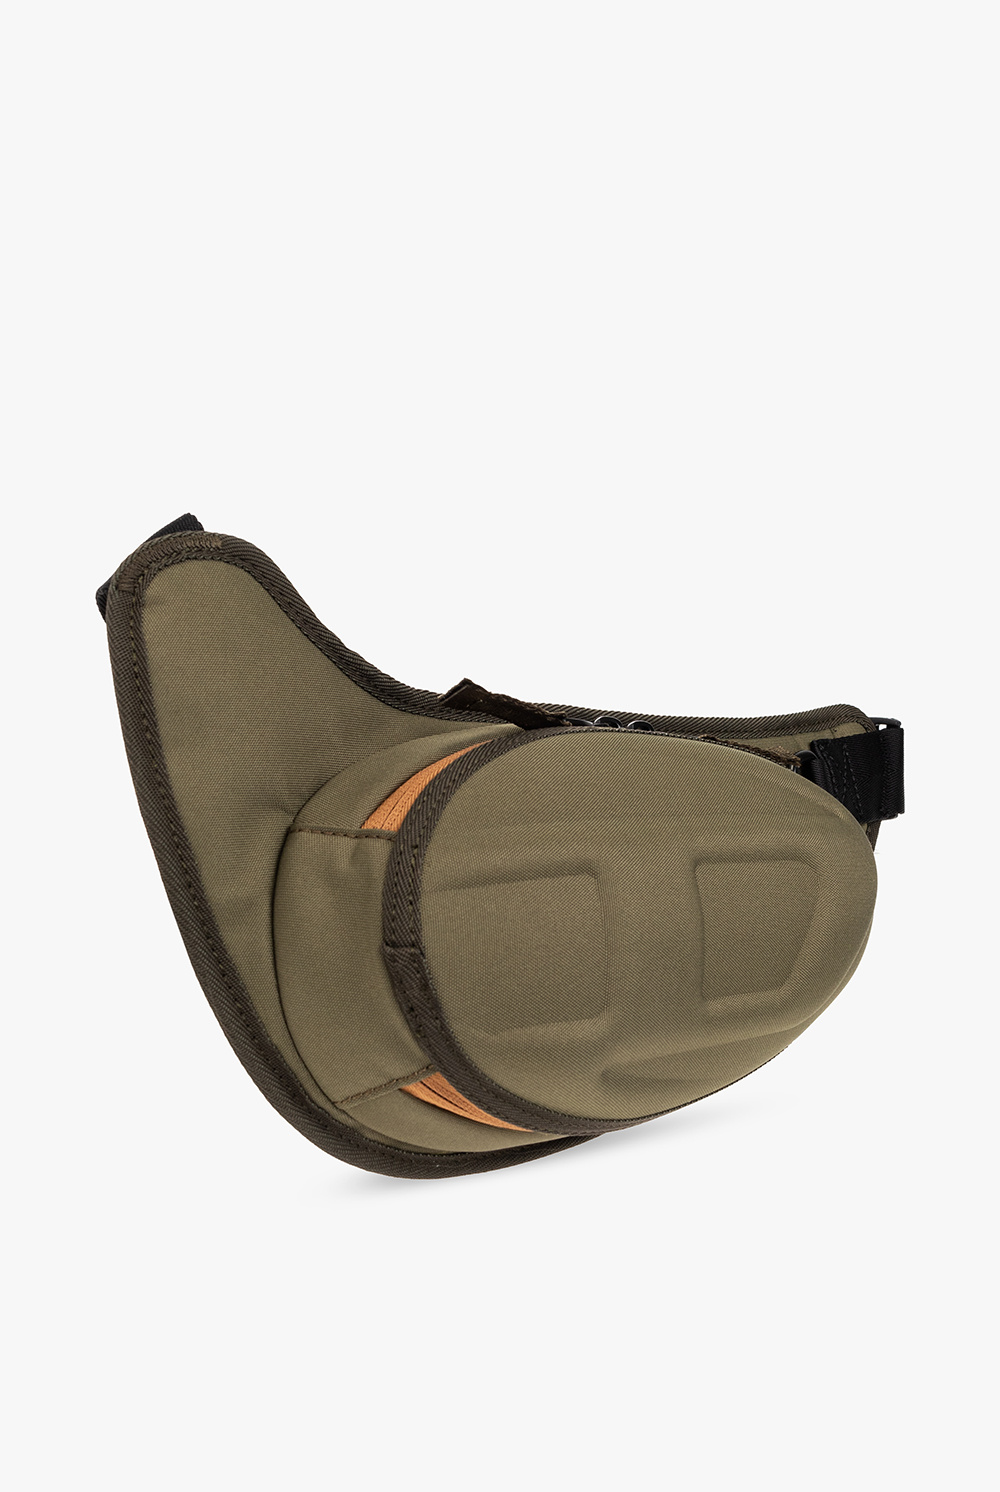 Diesel ‘1DR-POD’ belt PEAK bag